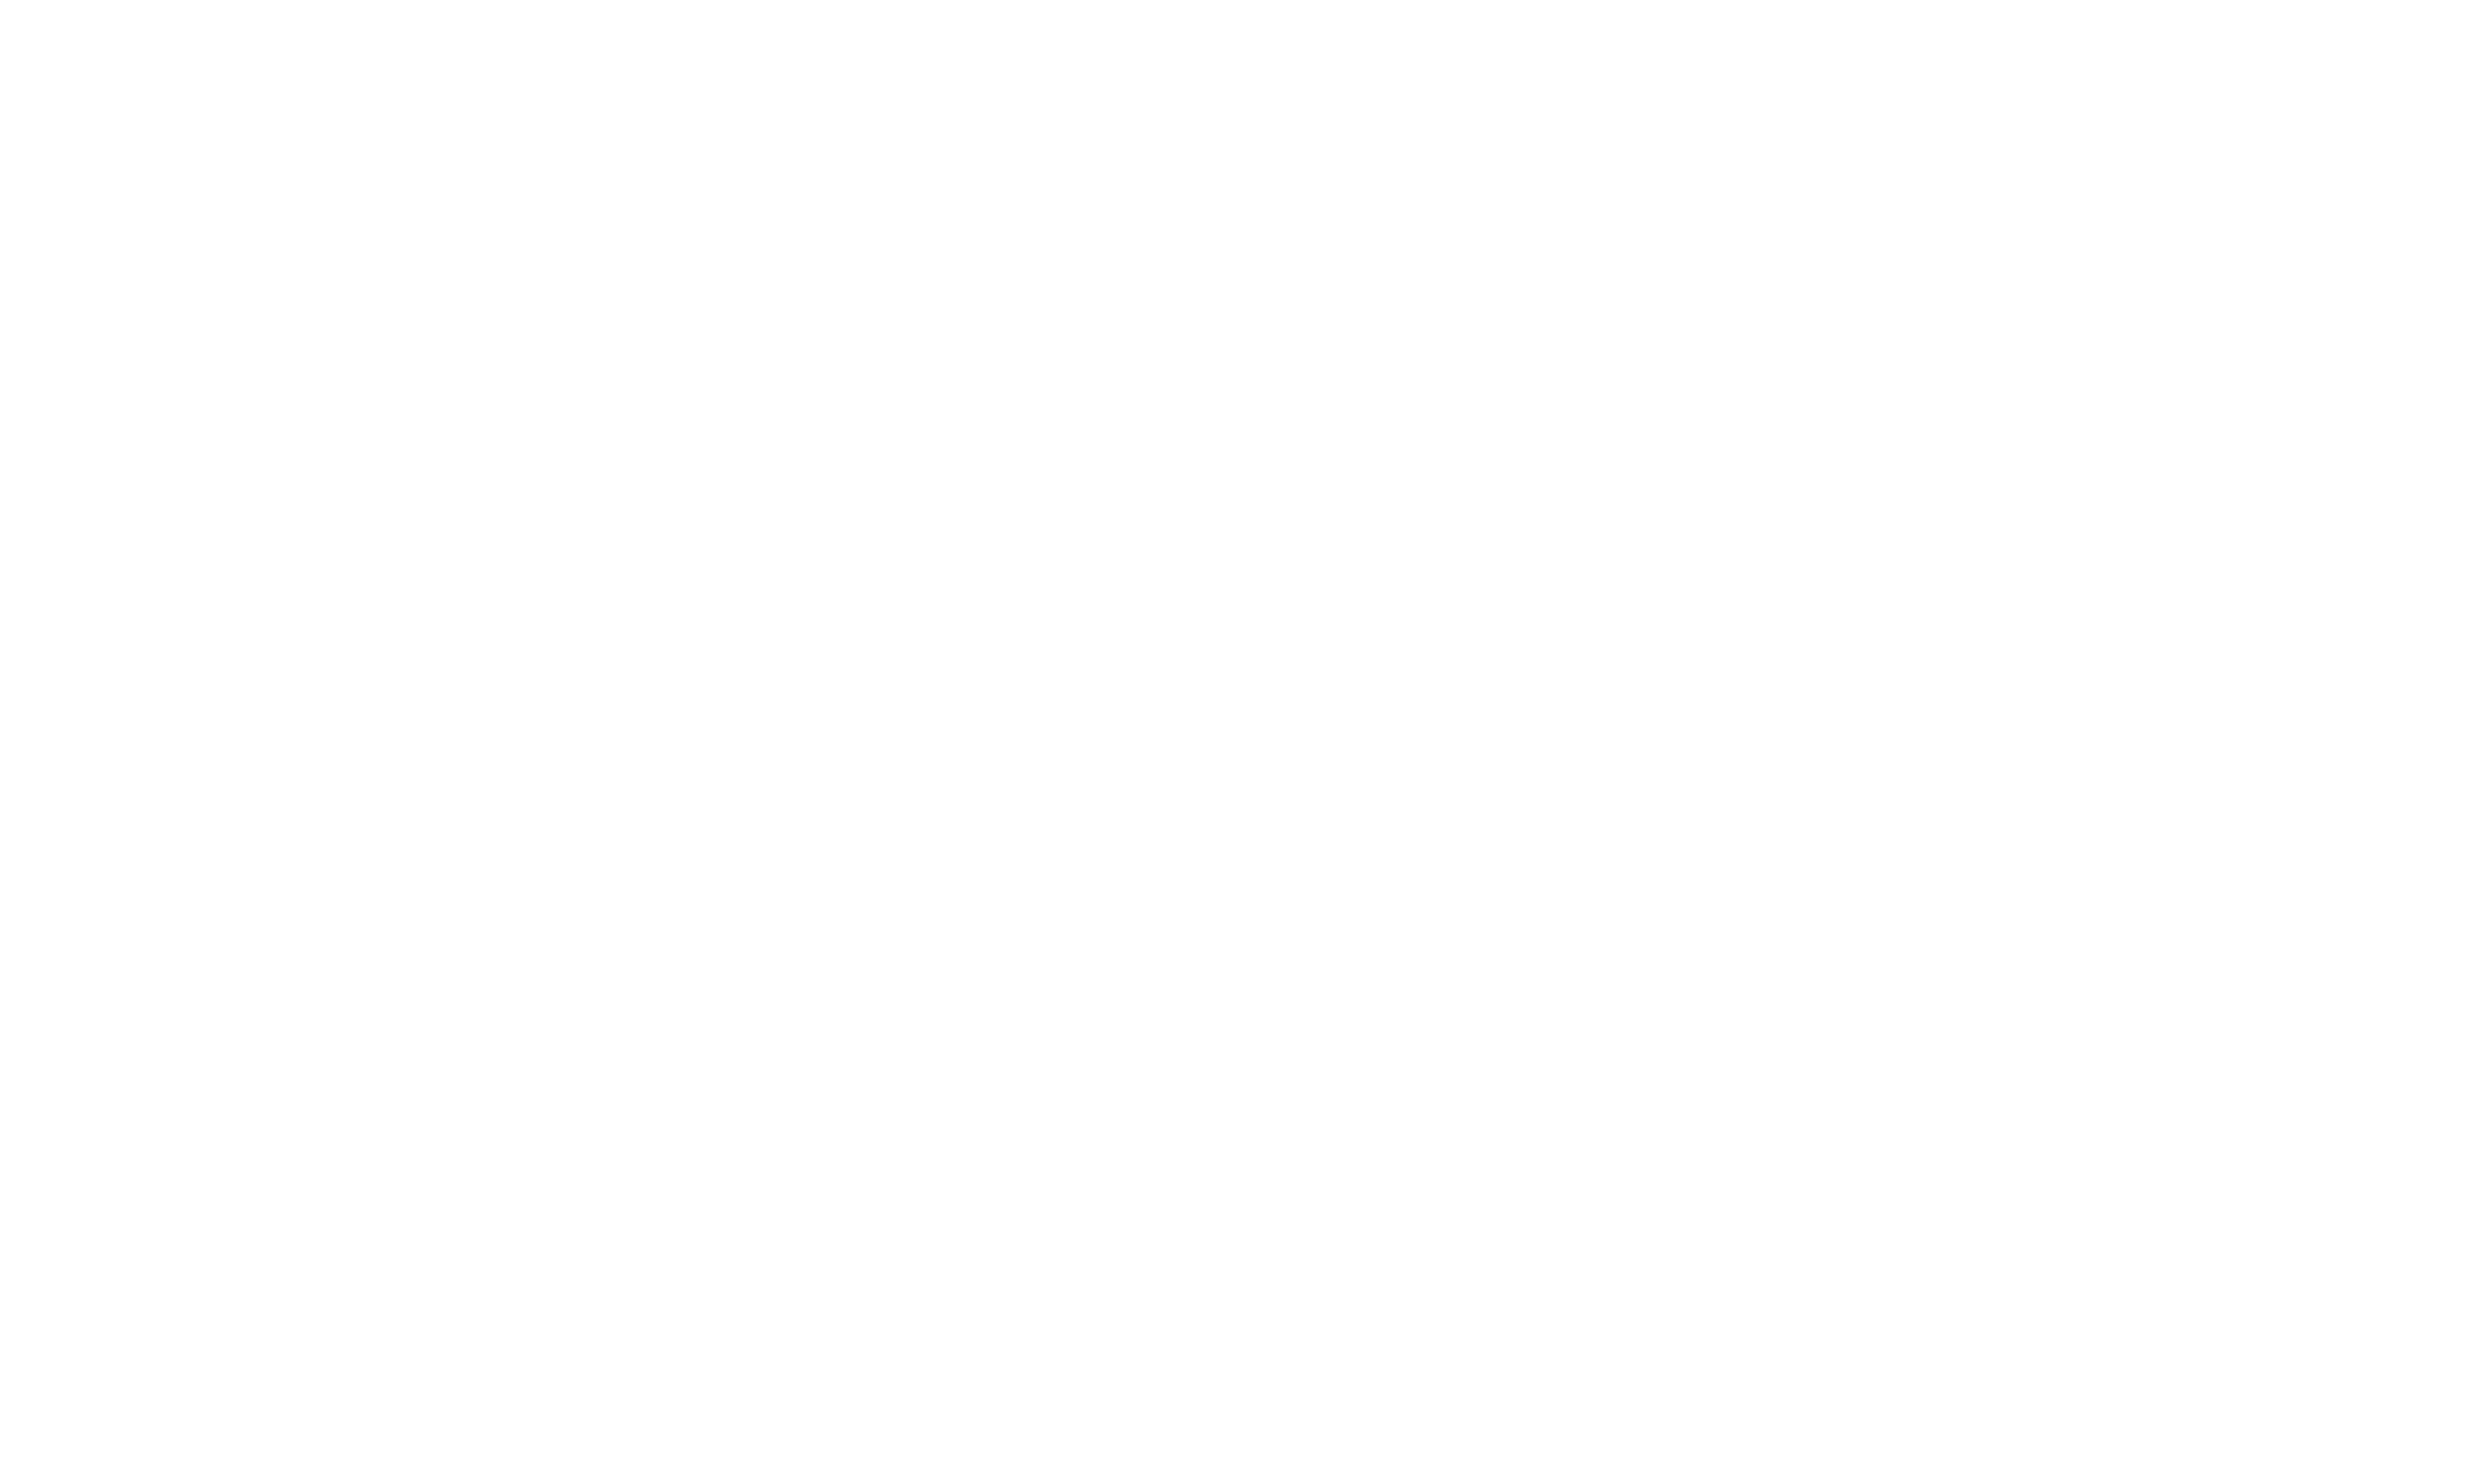 SWAP&GO